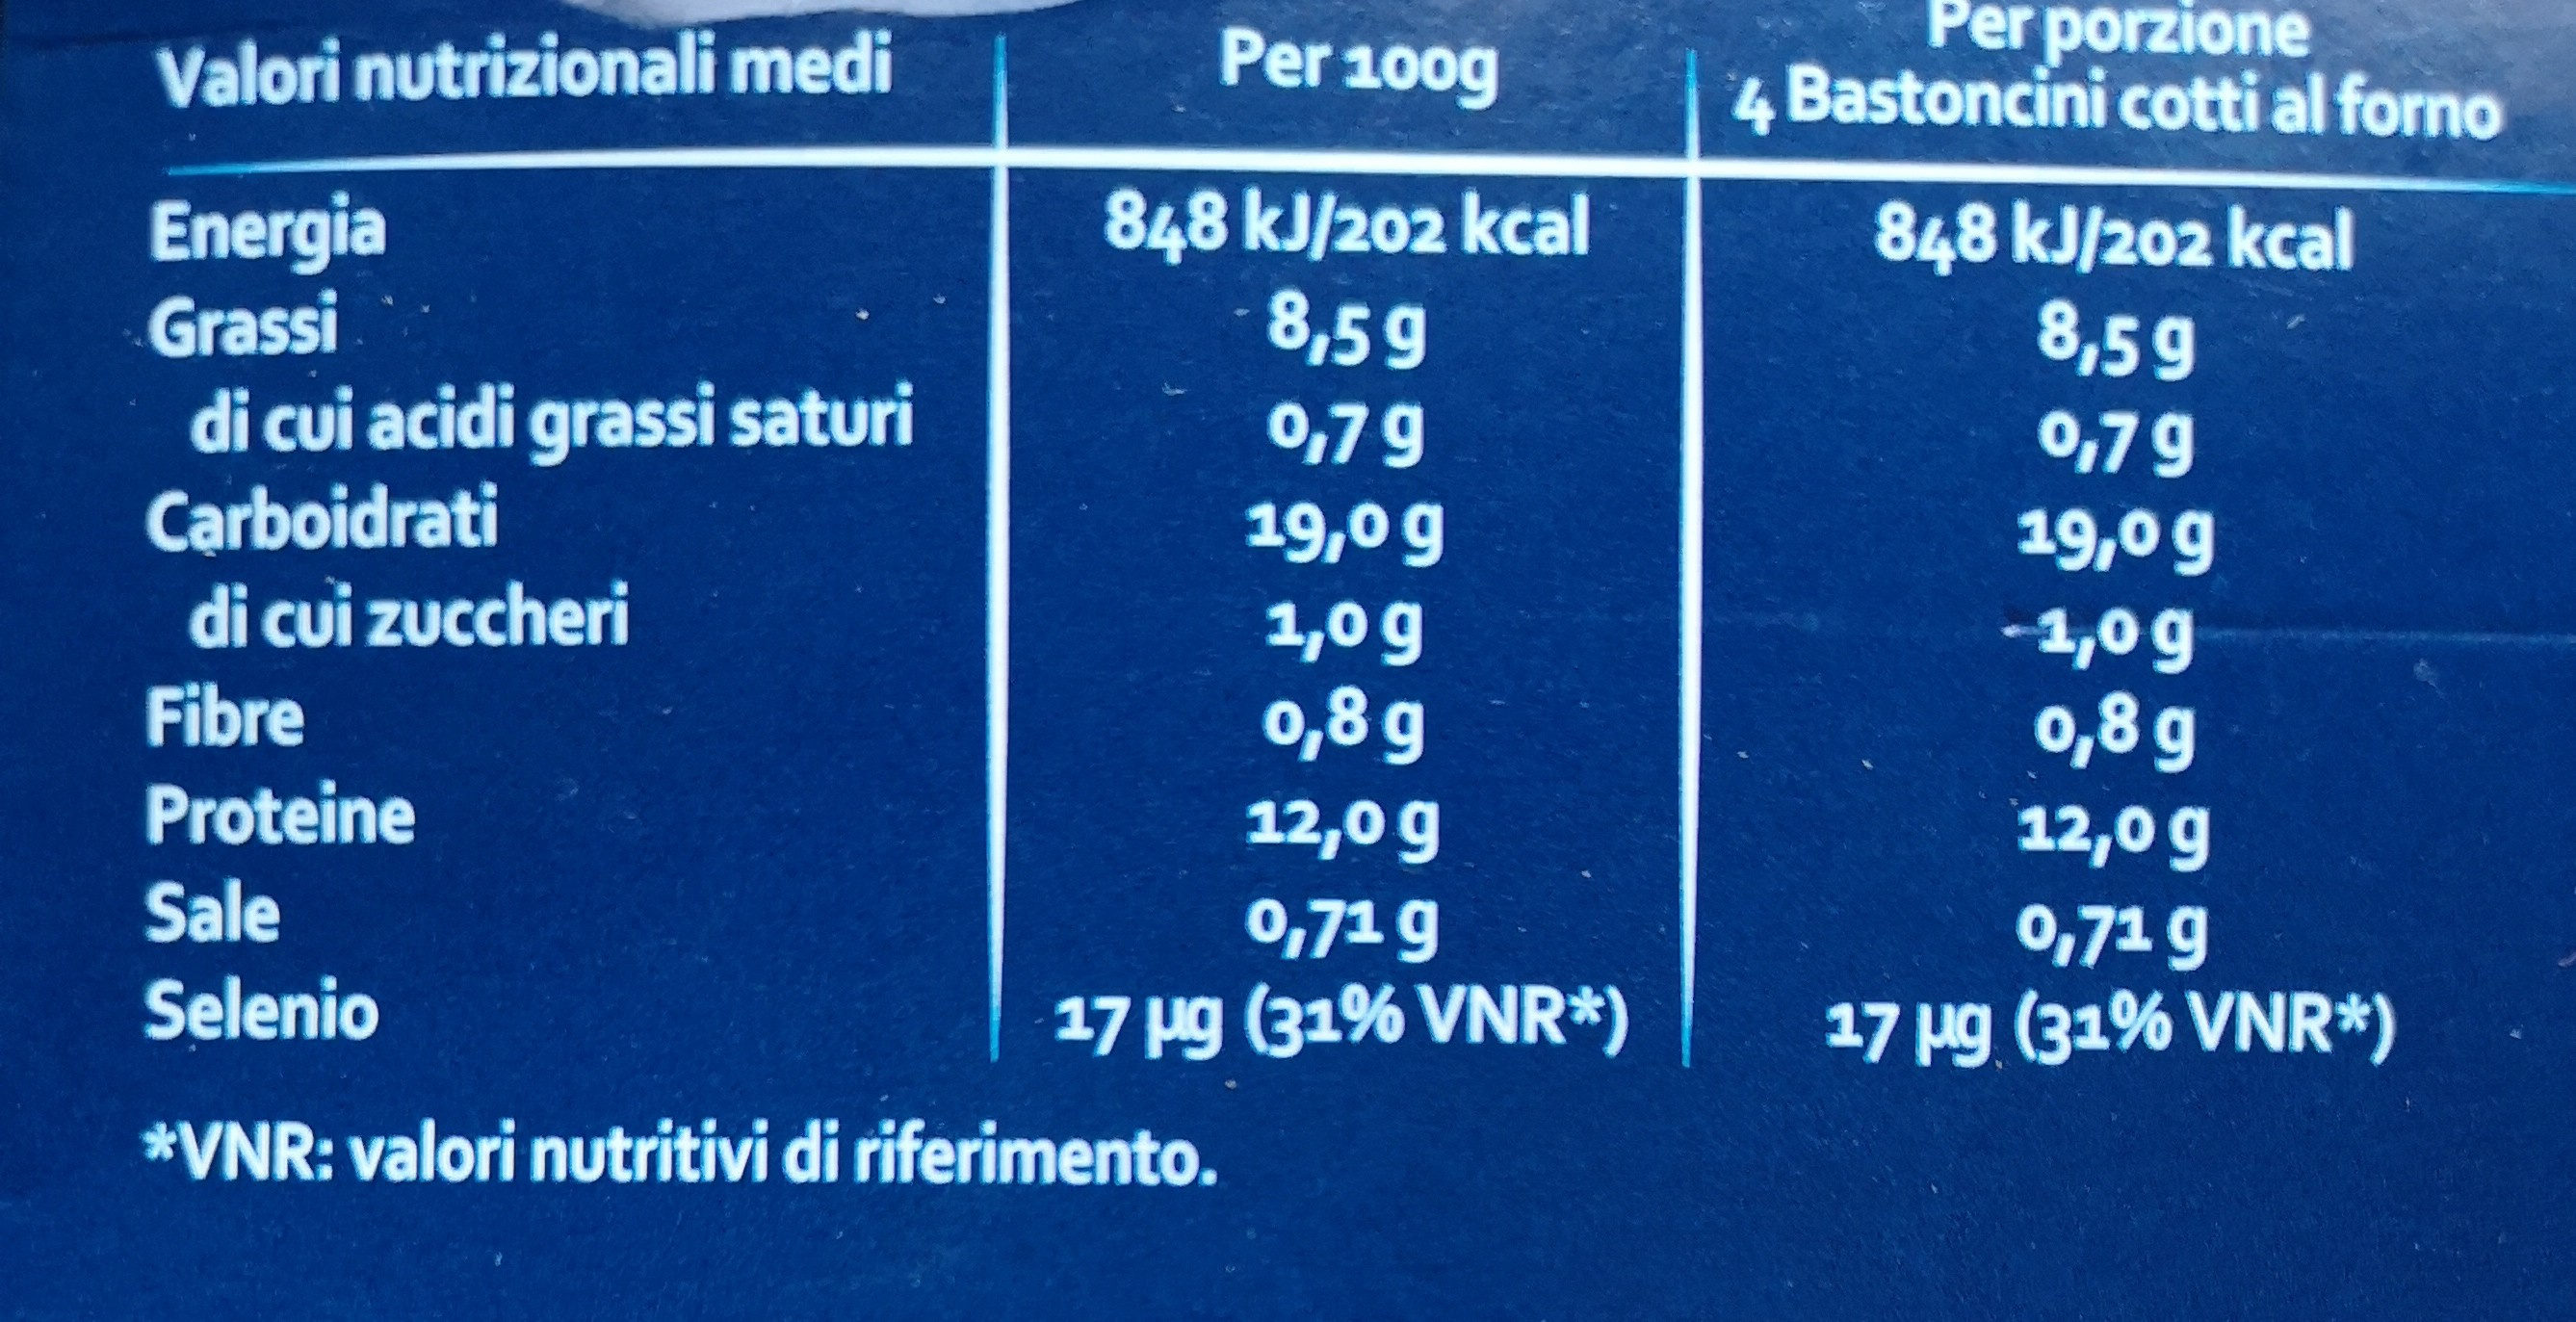 filetti di merluzzo - Valori nutrizionali